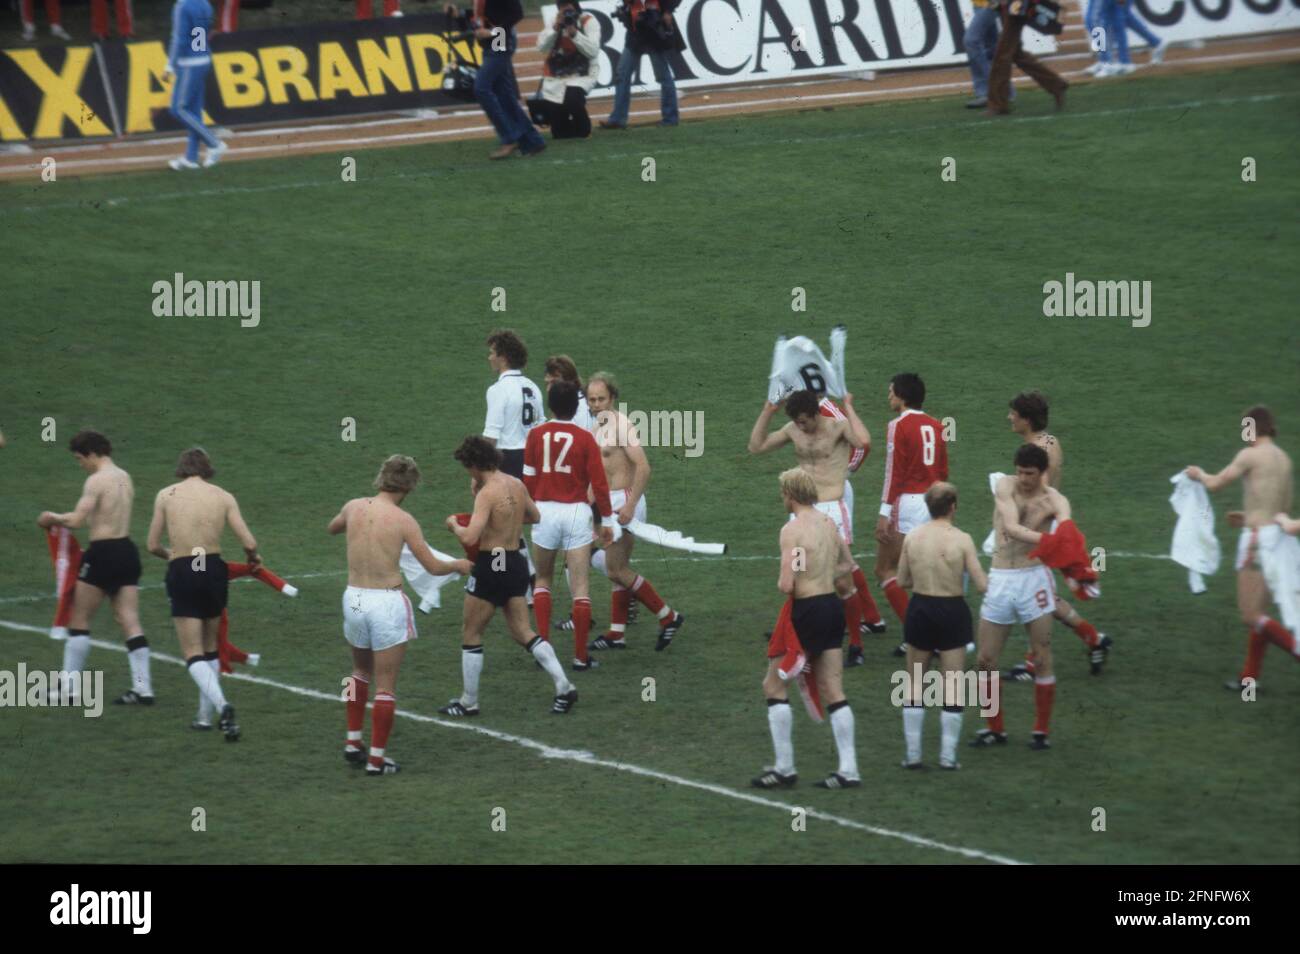 Copa Mundial de Fútbol 1978 en Argentina Polonia - Alemania 0:0 01.06.1978, partido de apertura / intercambio de camisetas después del partido [traducción automática] Foto de stock